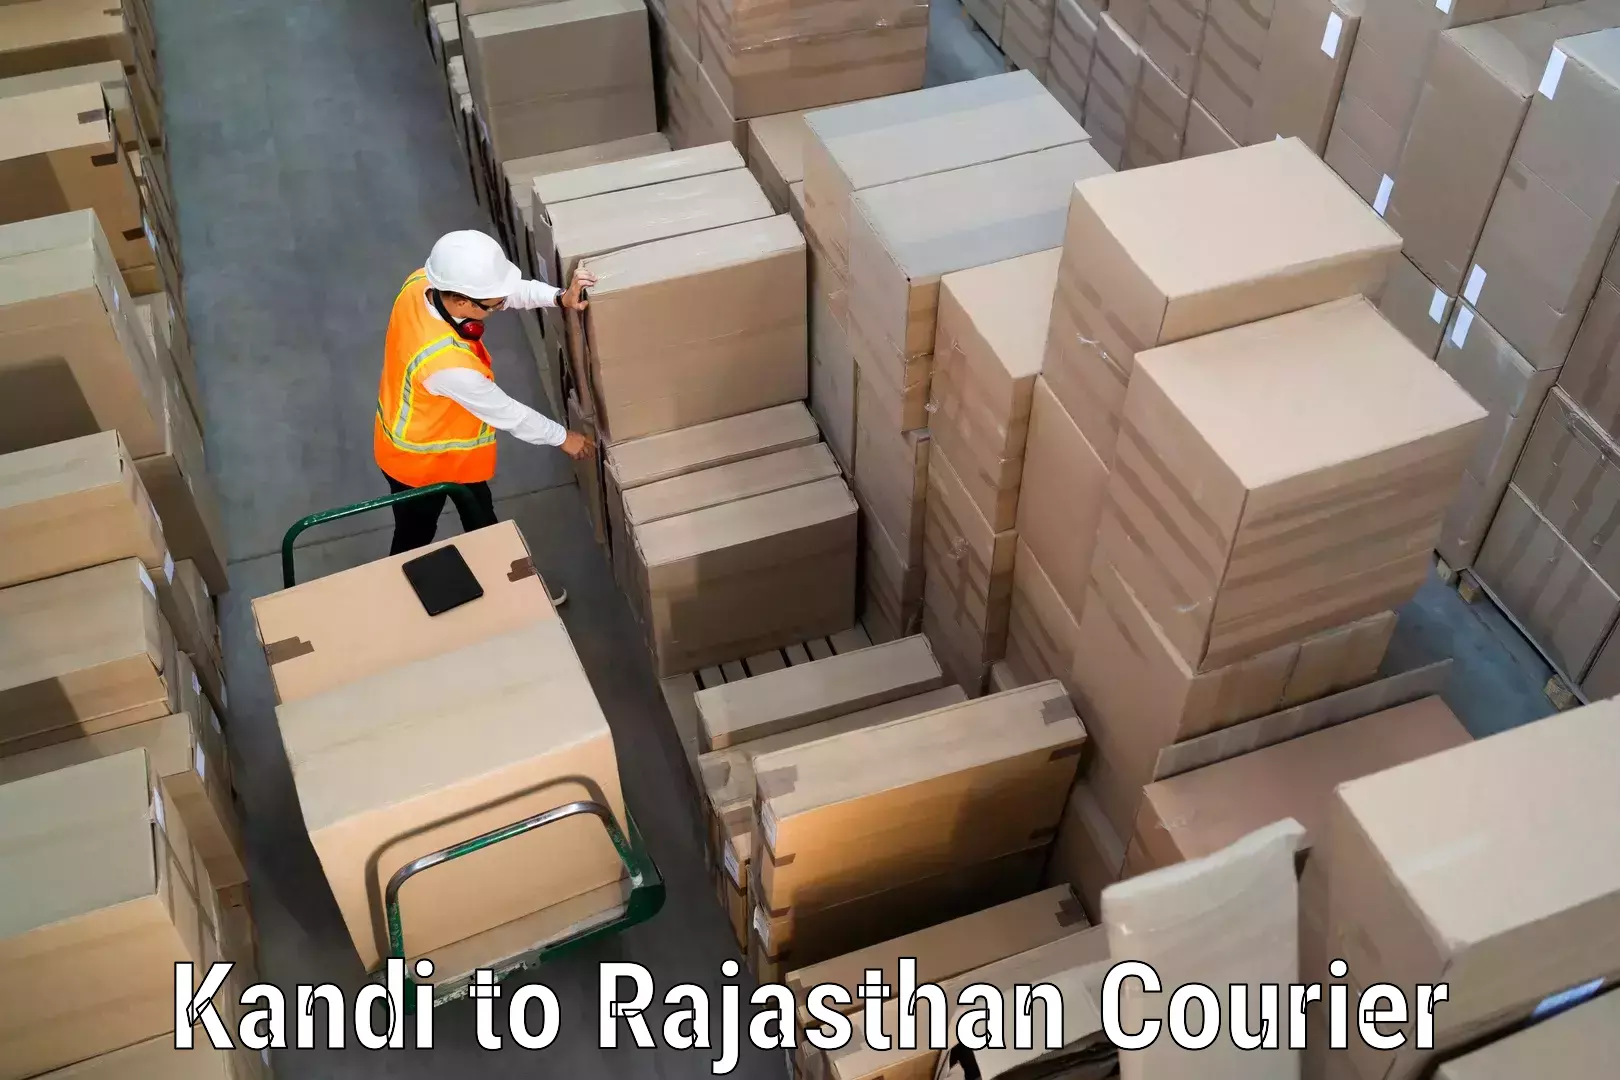 Customized shipping options Kandi to Mahwa